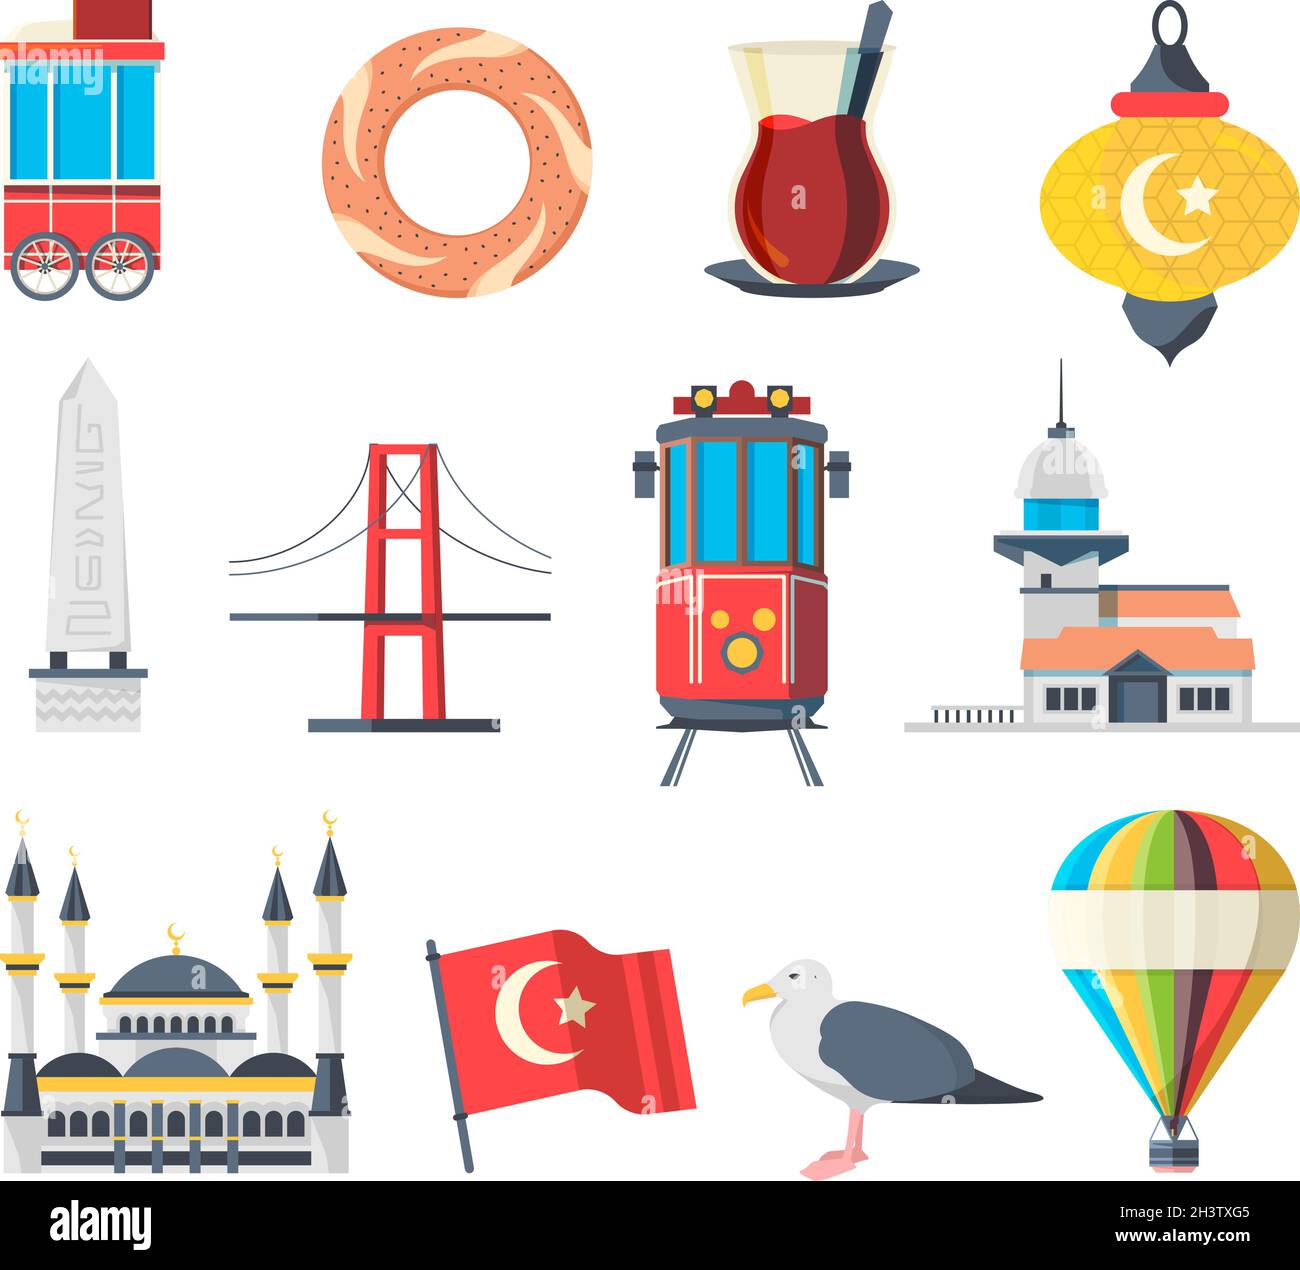 Wahrzeichen der Türkei. Reisende Set von istanbul kulturellen Objekten und muslimischen Gebäuden nationalen Moschee Vektor-Bildersammlung Stock Vektor